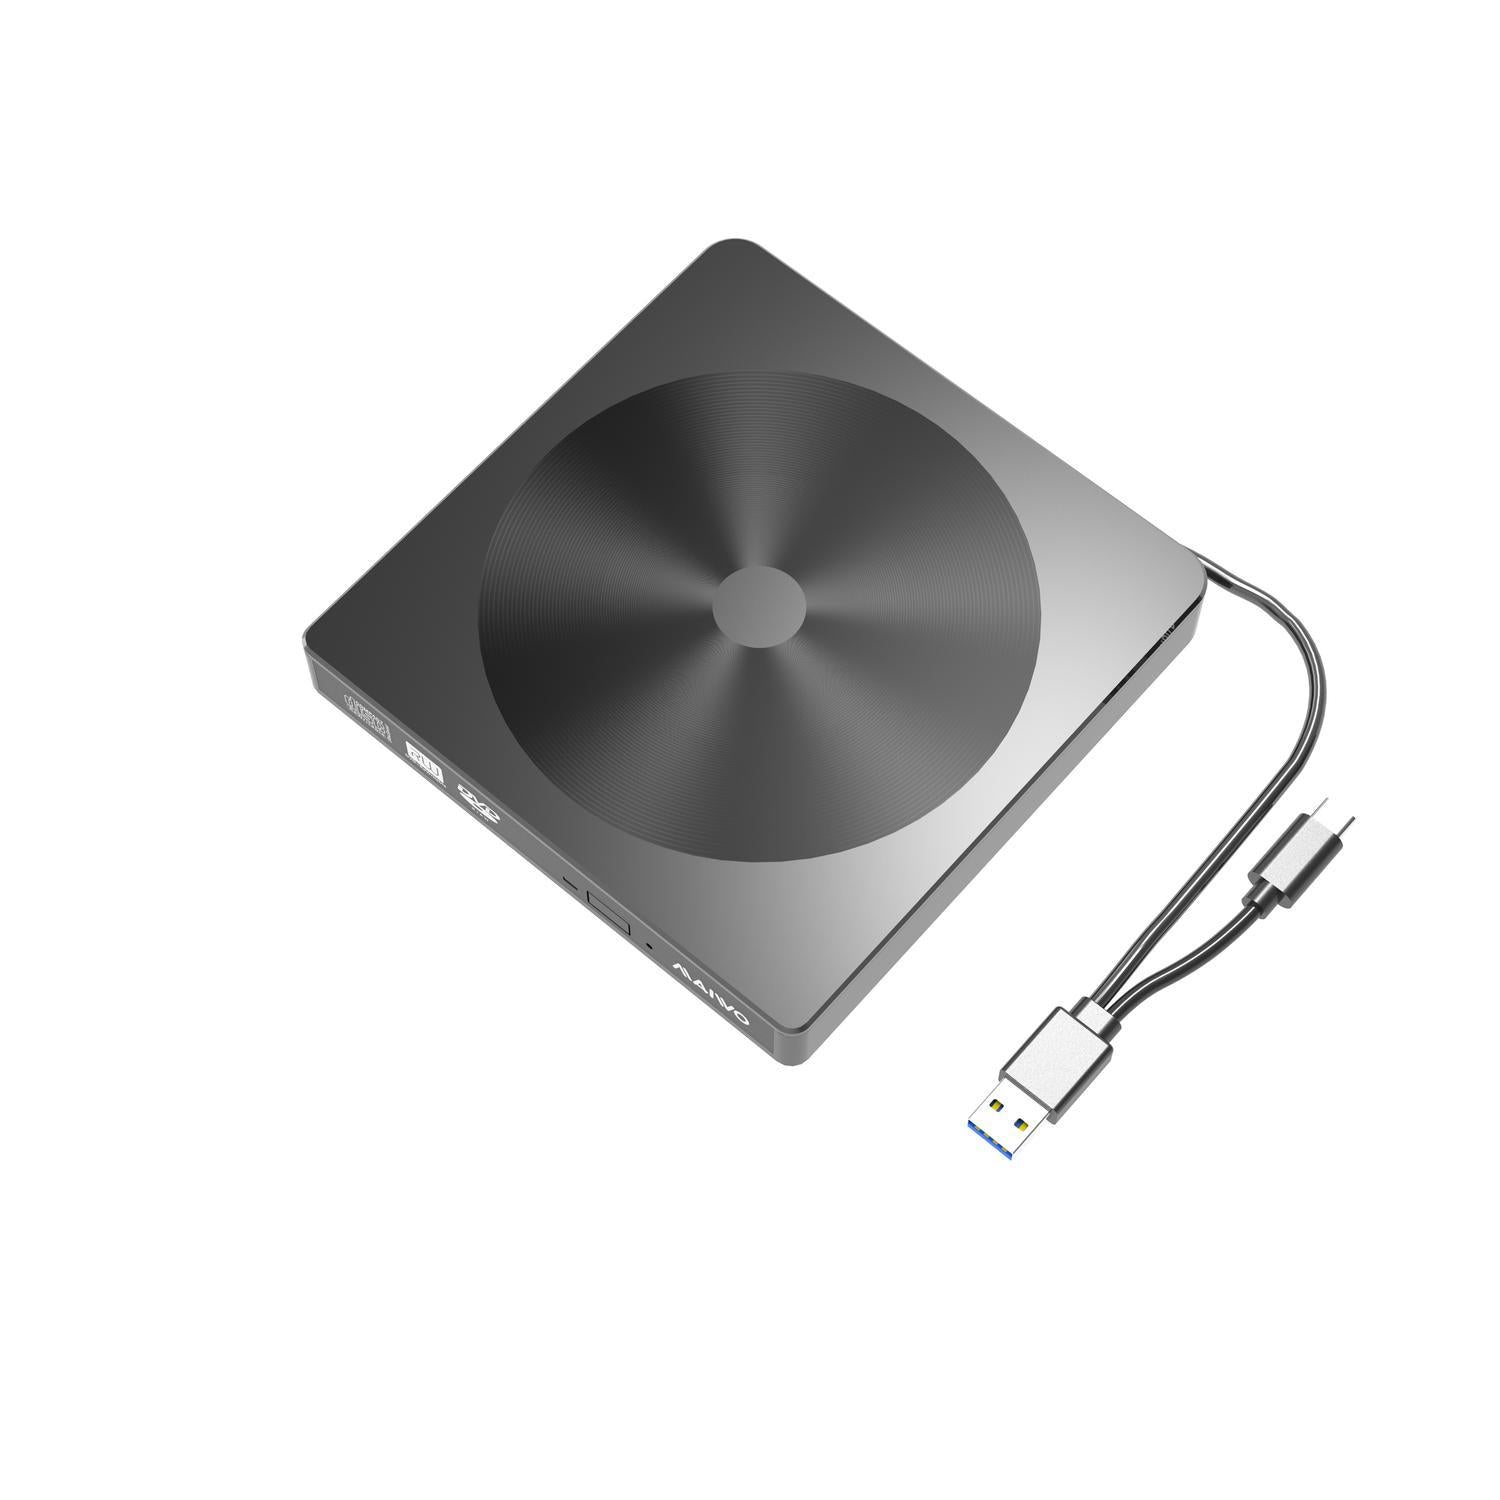 Maiwo Slim ekstern USB DVD/CD-spiller både USB-C og USB-A Ekstern optisk stasjon